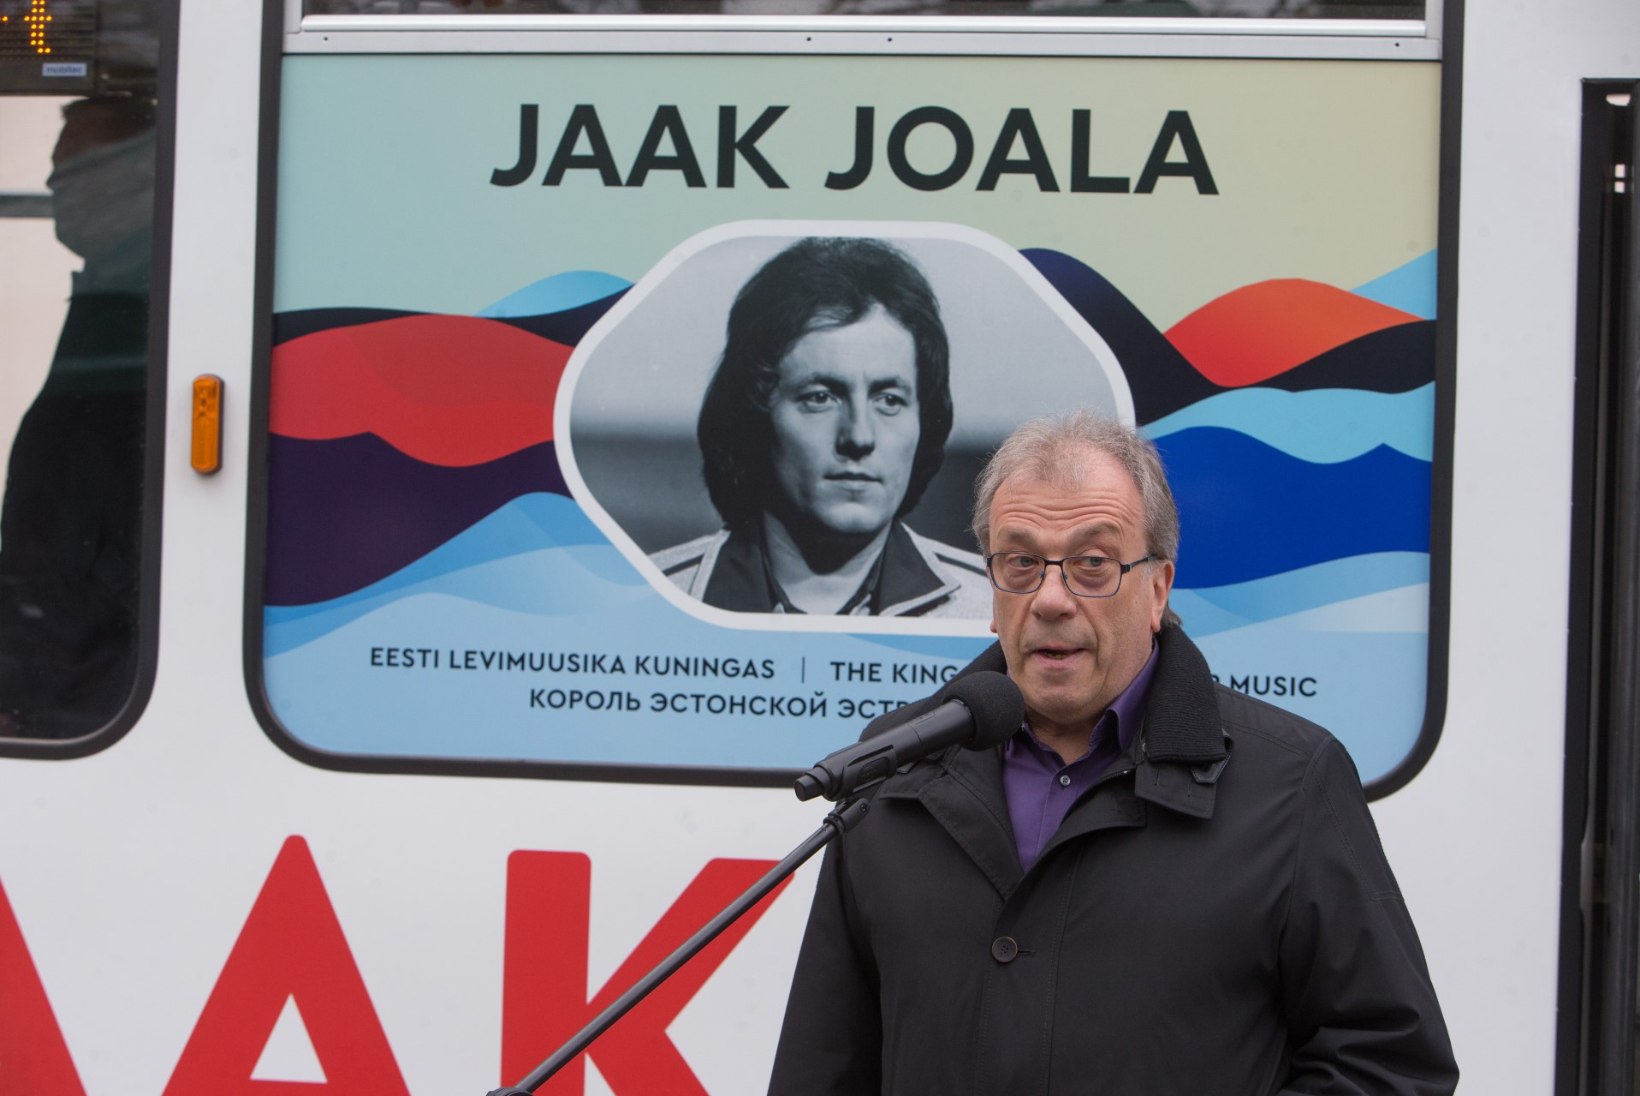 GALERII | VENEMAA FÄNNID TULID TEELE SAATMA: Eesti levimuusika kuninga Jaak Joala nimeline tramm möödub tema kunagistest koduakendest